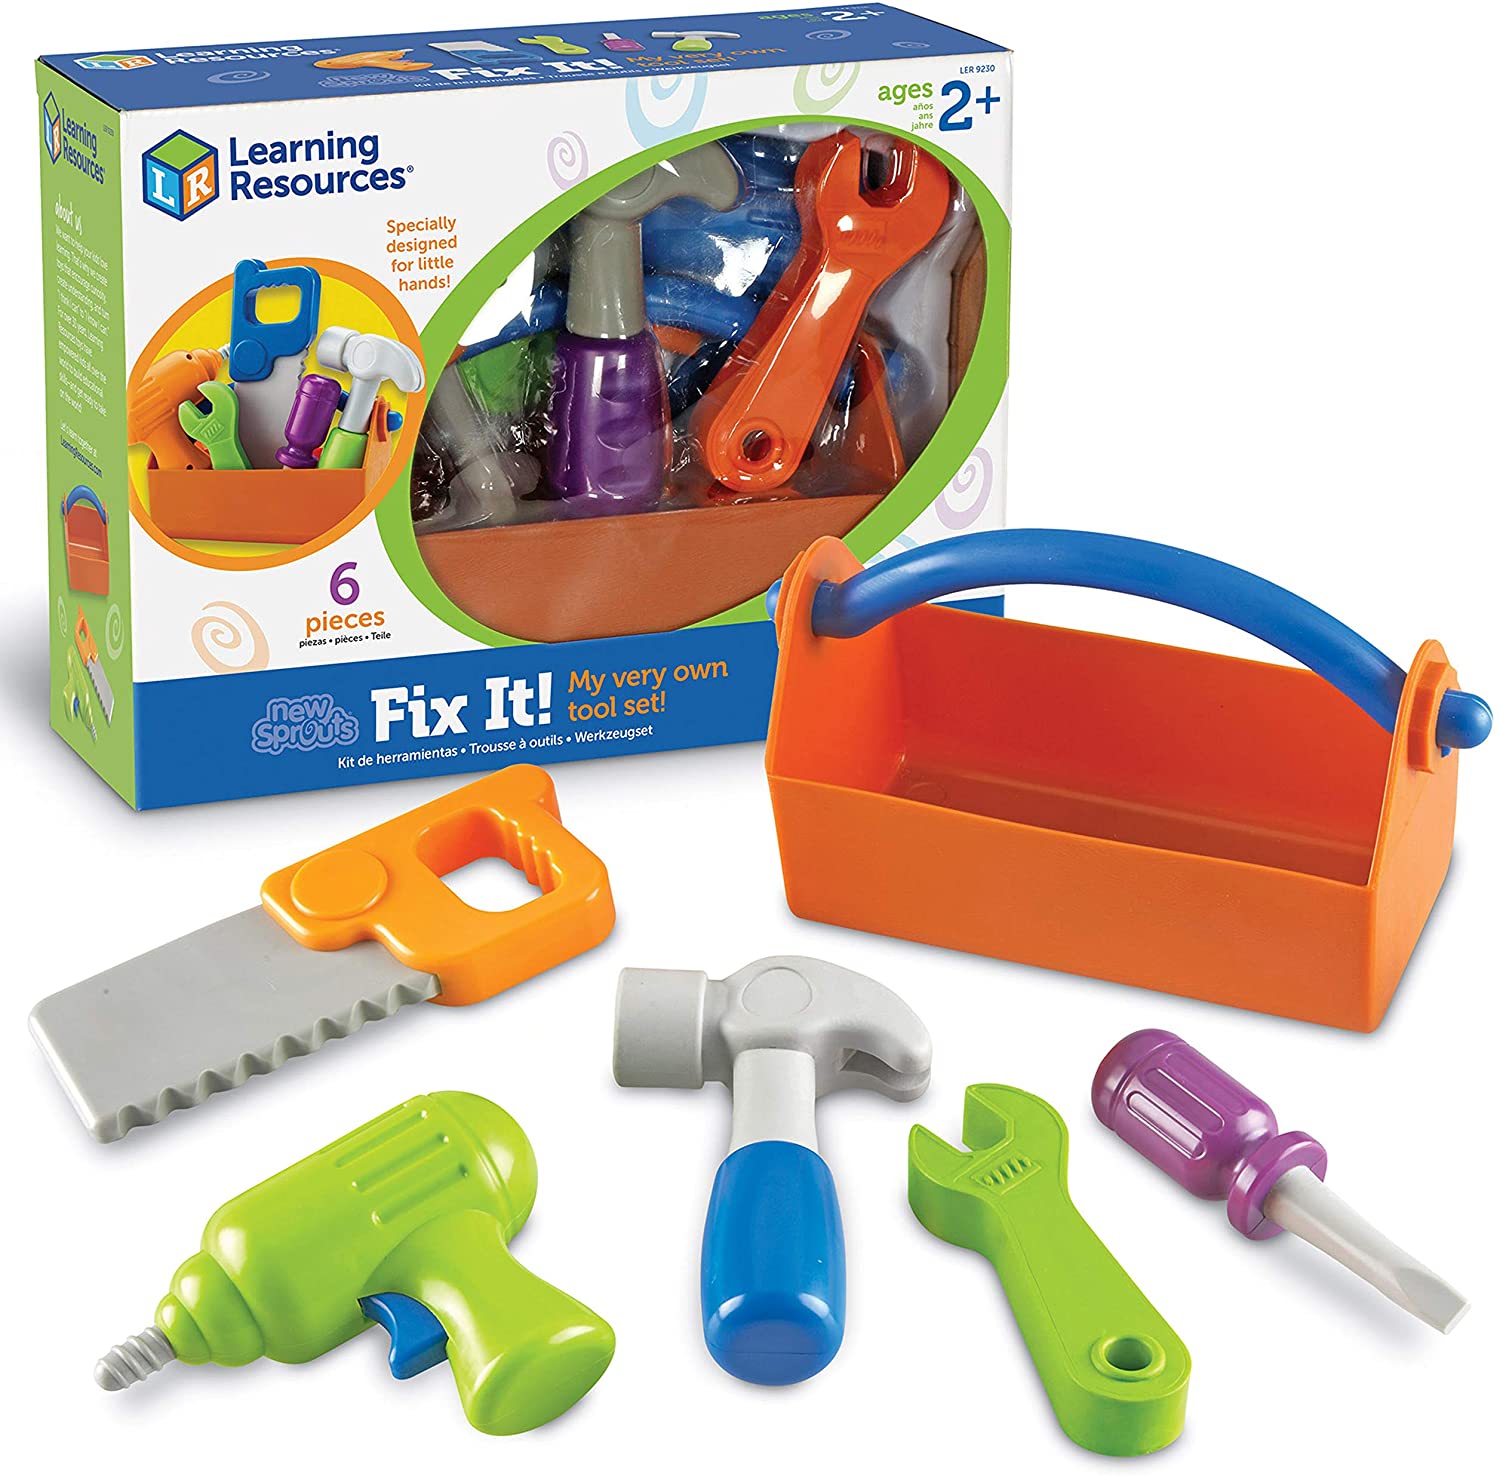 14 Pc. Black & Decker Plastic Toy Tool Box & Tools Pretend Play